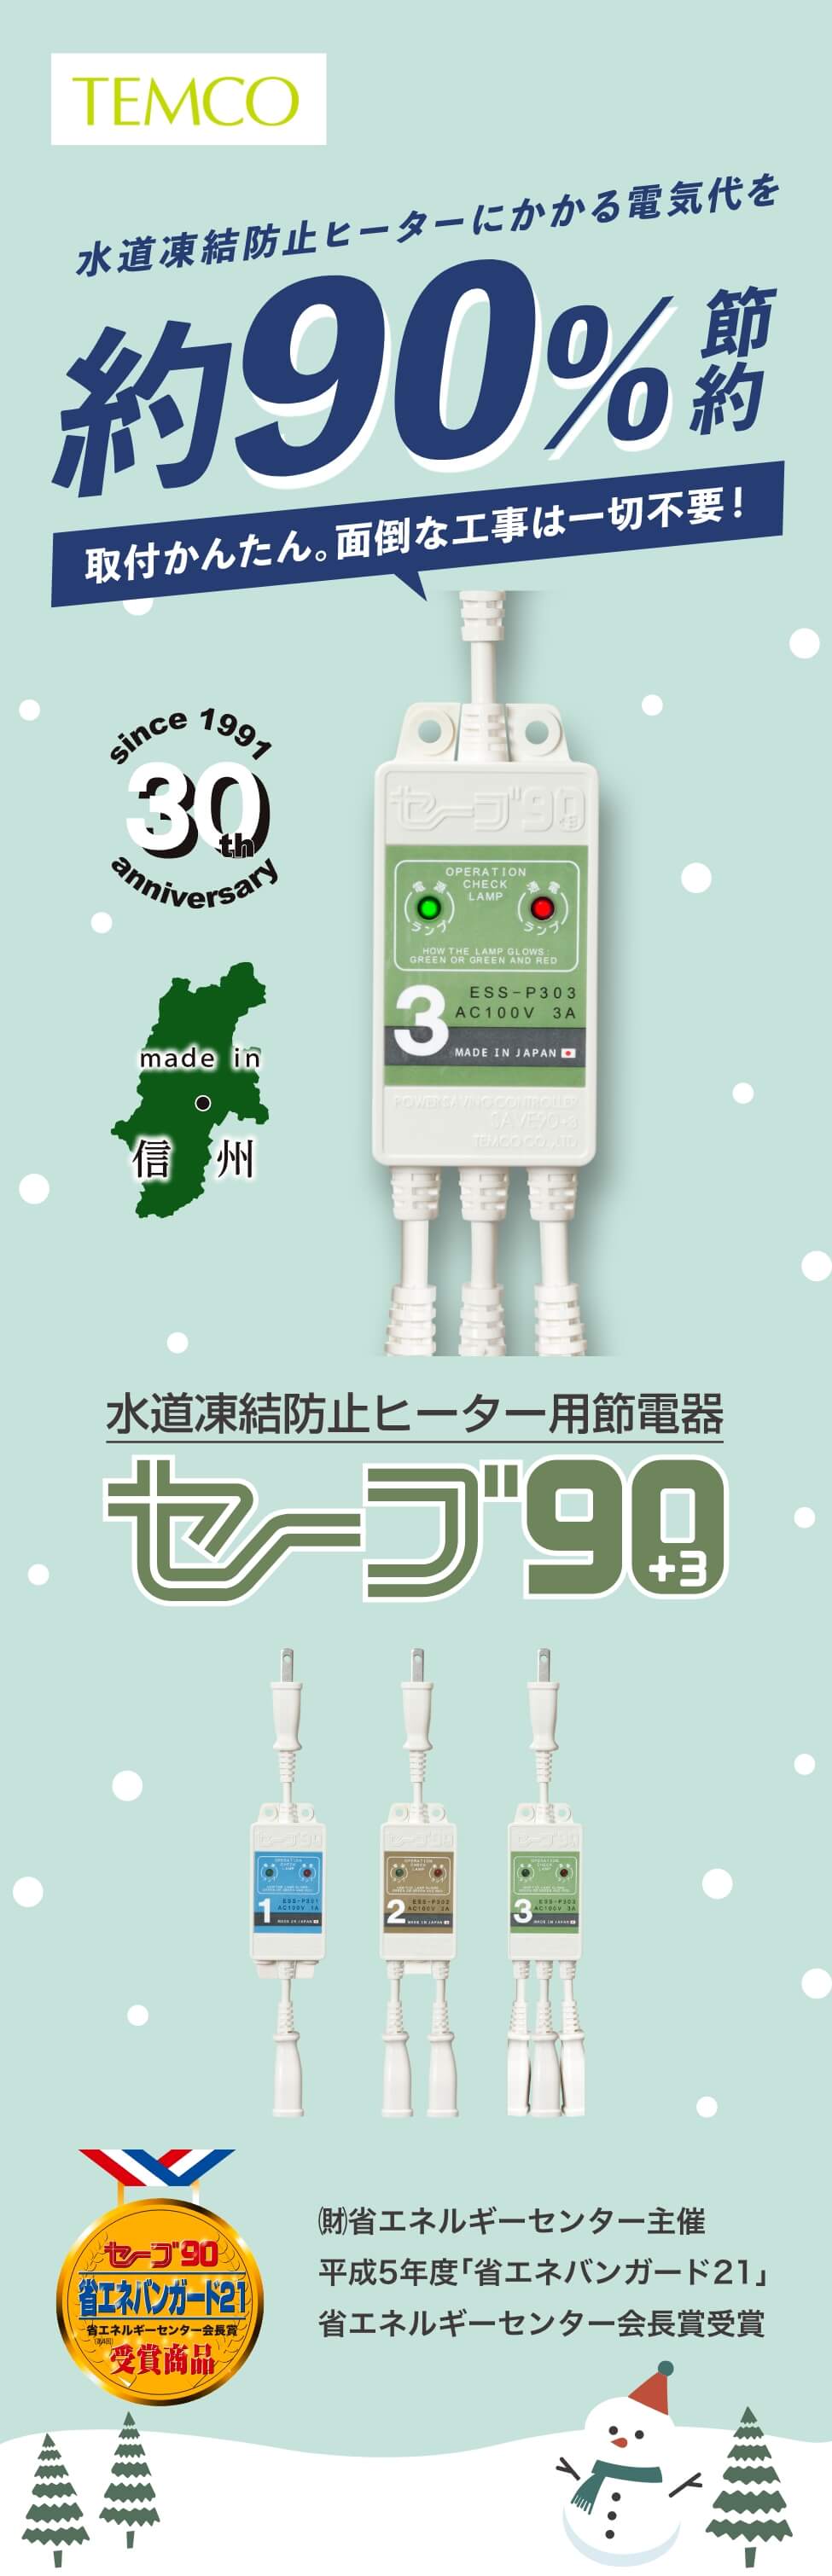 水道凍結防止ヒーター用節電器「セーブ90+3」 | テムコ株式会社